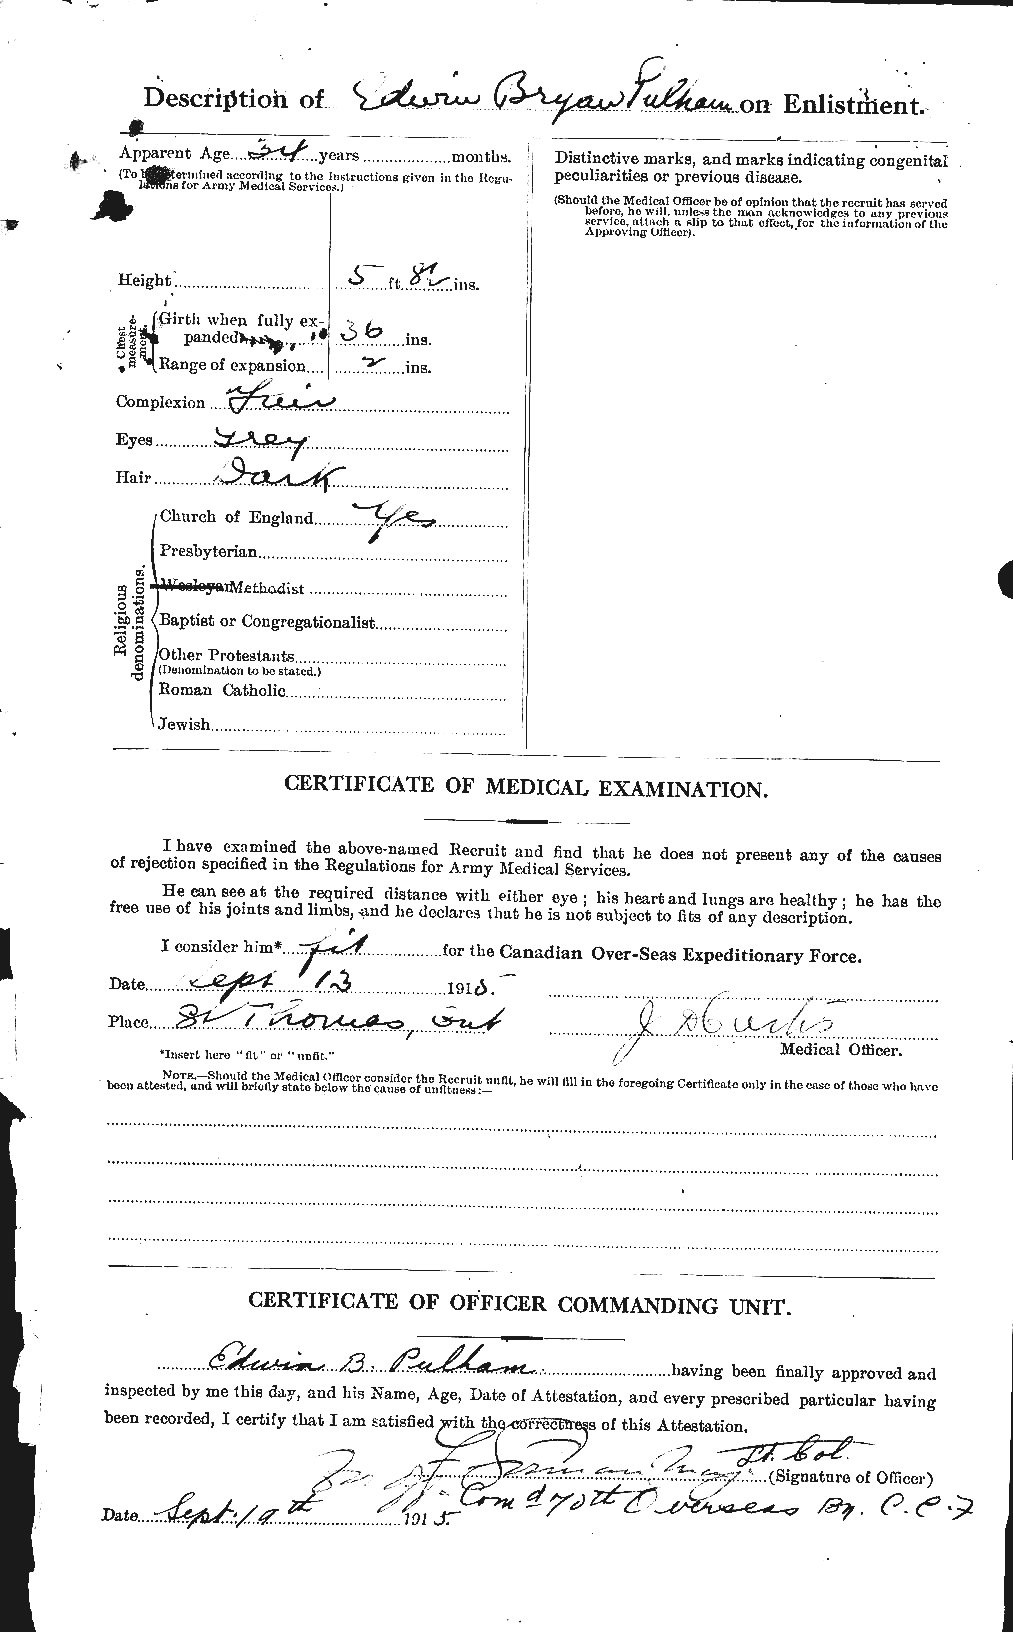 Dossiers du Personnel de la Première Guerre mondiale - CEC 589526b